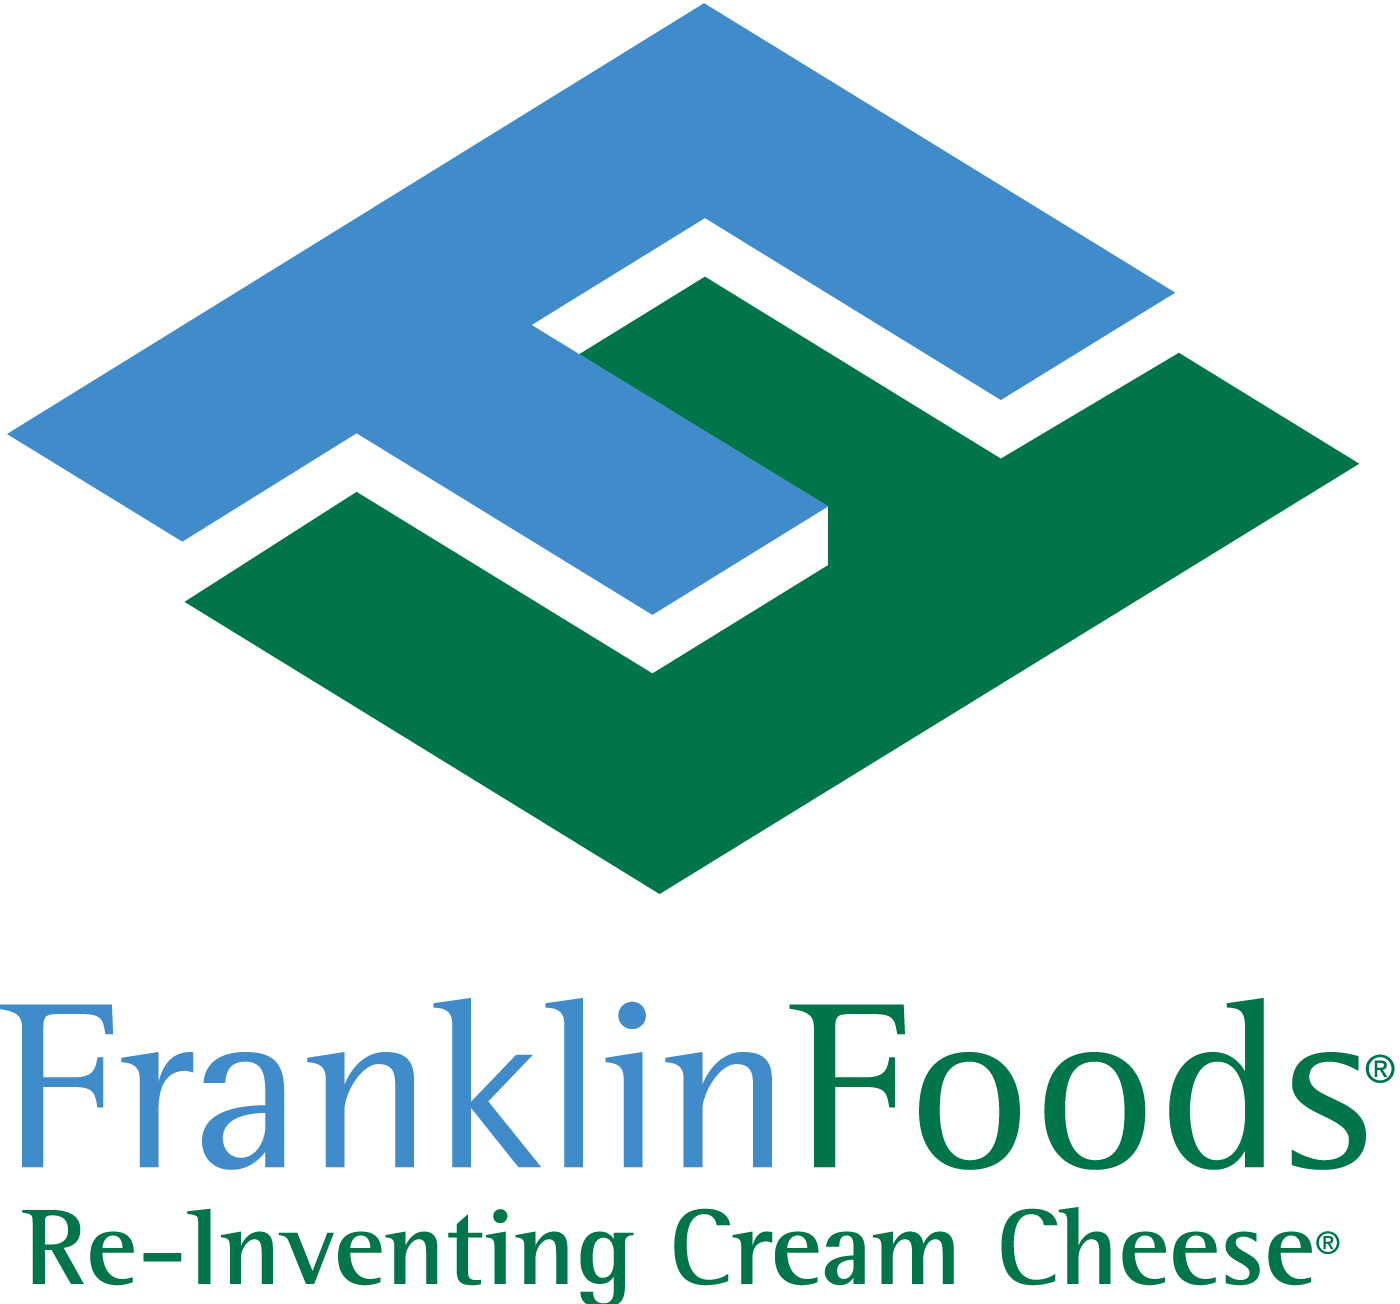 Franklin Foods logo